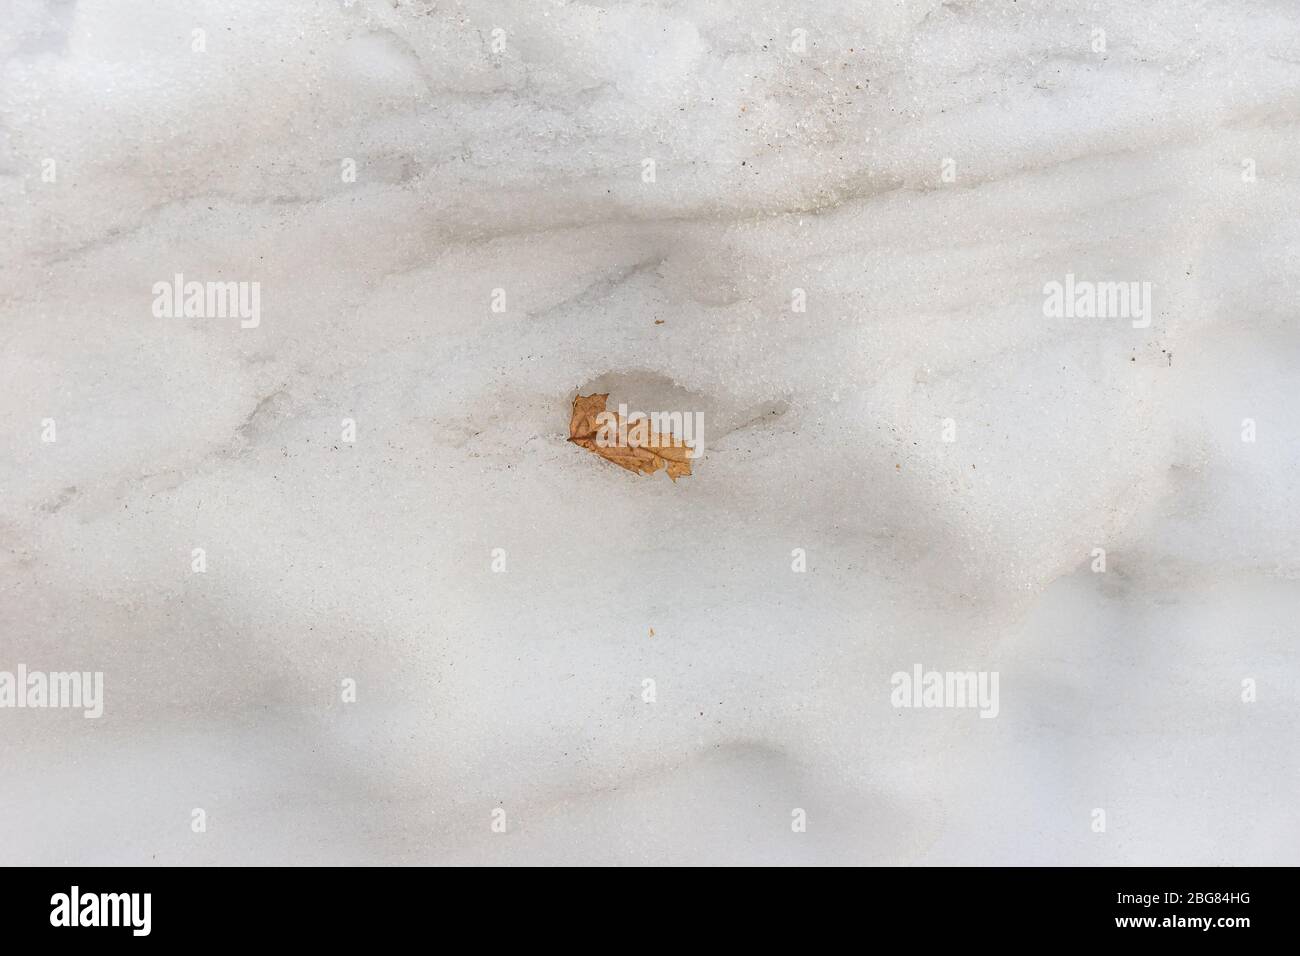 une feuille brune sèche à l'intérieur d'une neige chauffée dans les rayons du soleil de printemps et de la neige fondue Banque D'Images